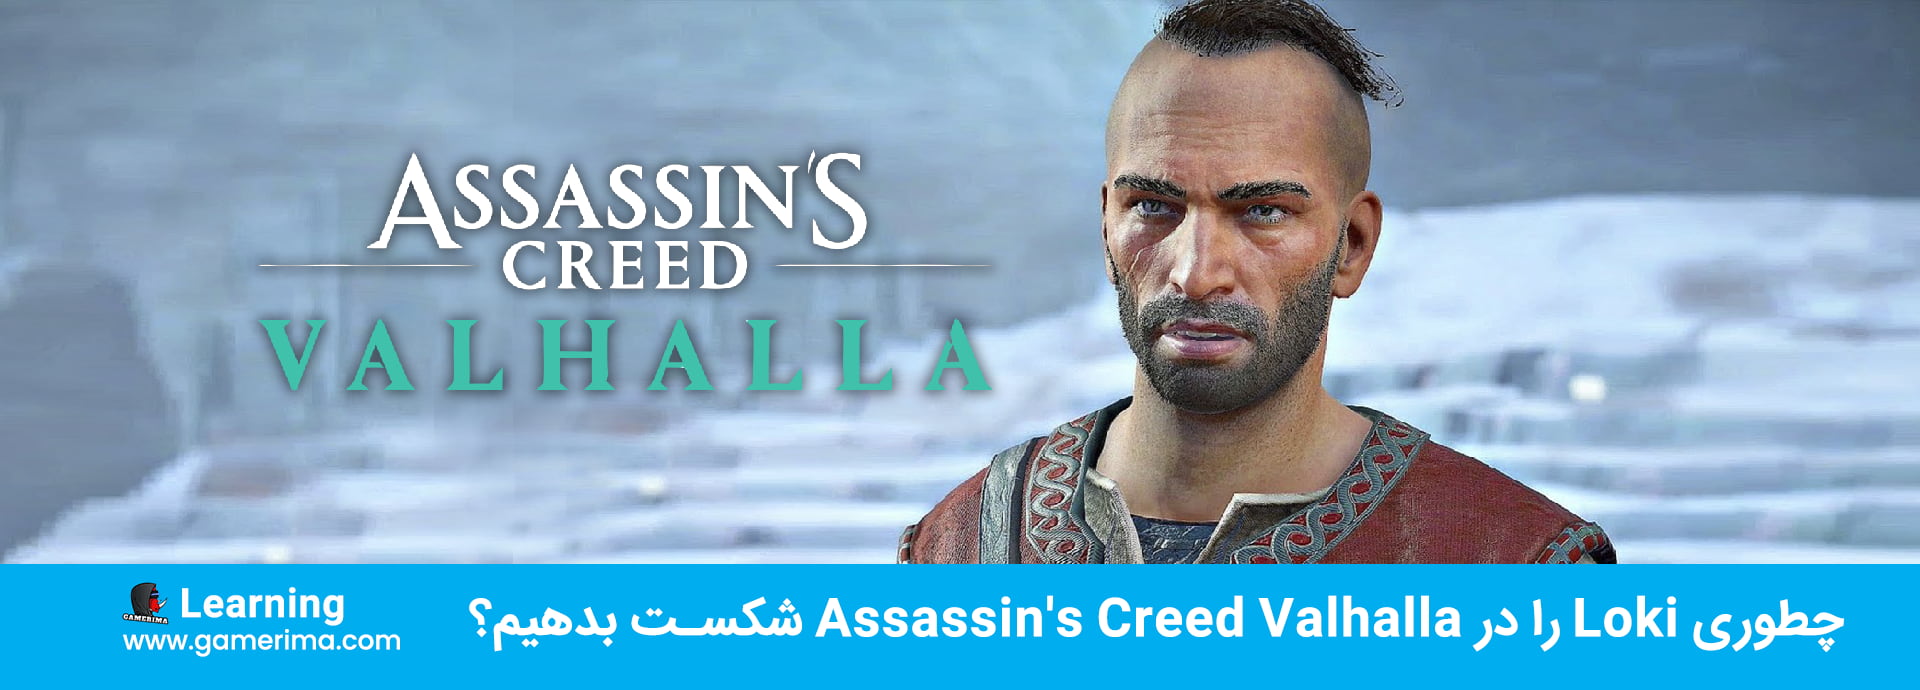 چطوری Loki را در Assassin’s Creed Valhalla شکست بدهیم؟